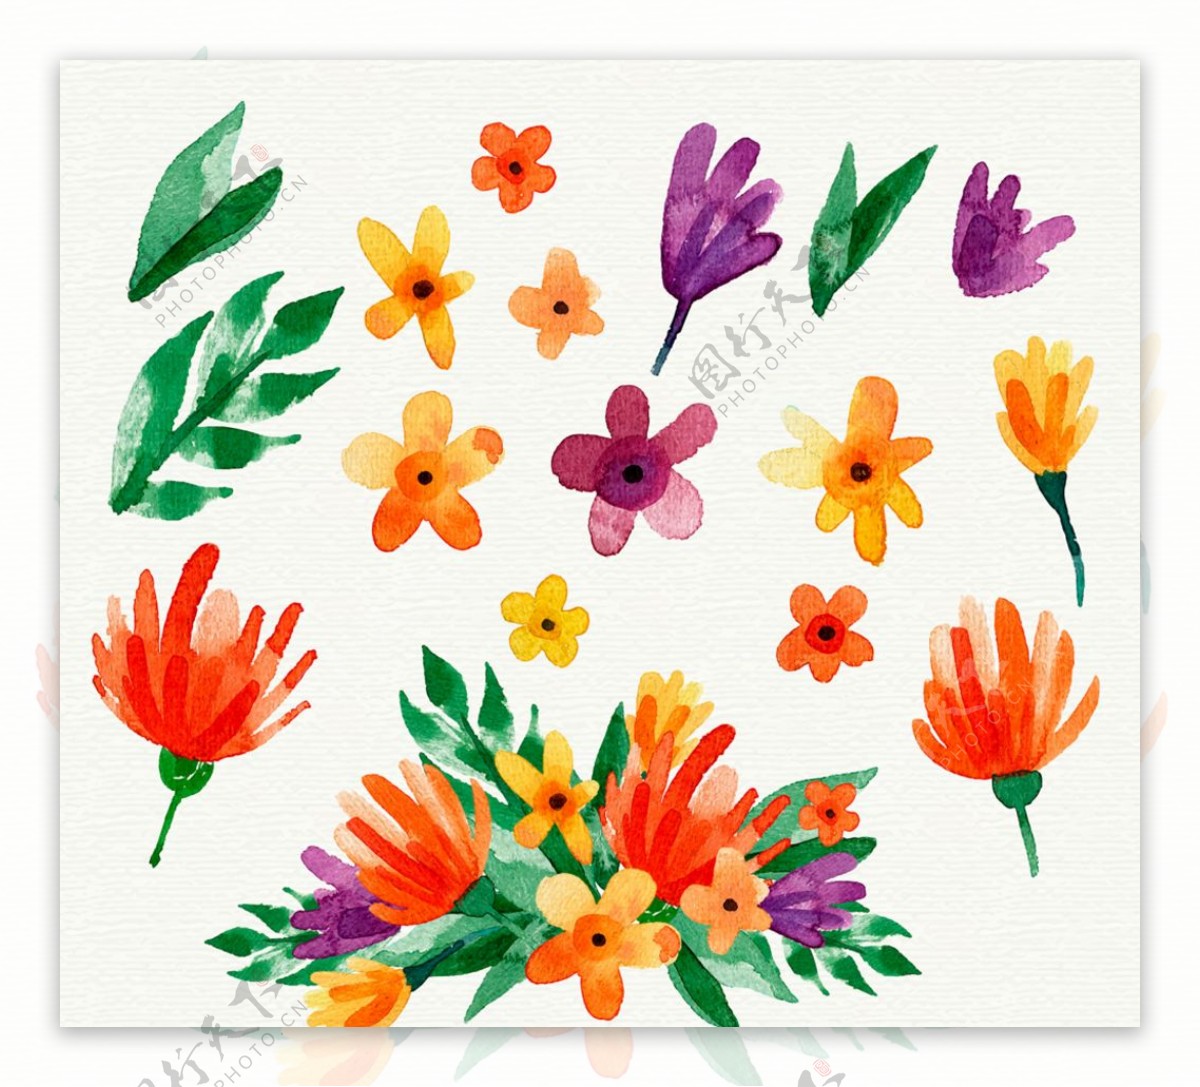 彩绘可爱花卉和叶子